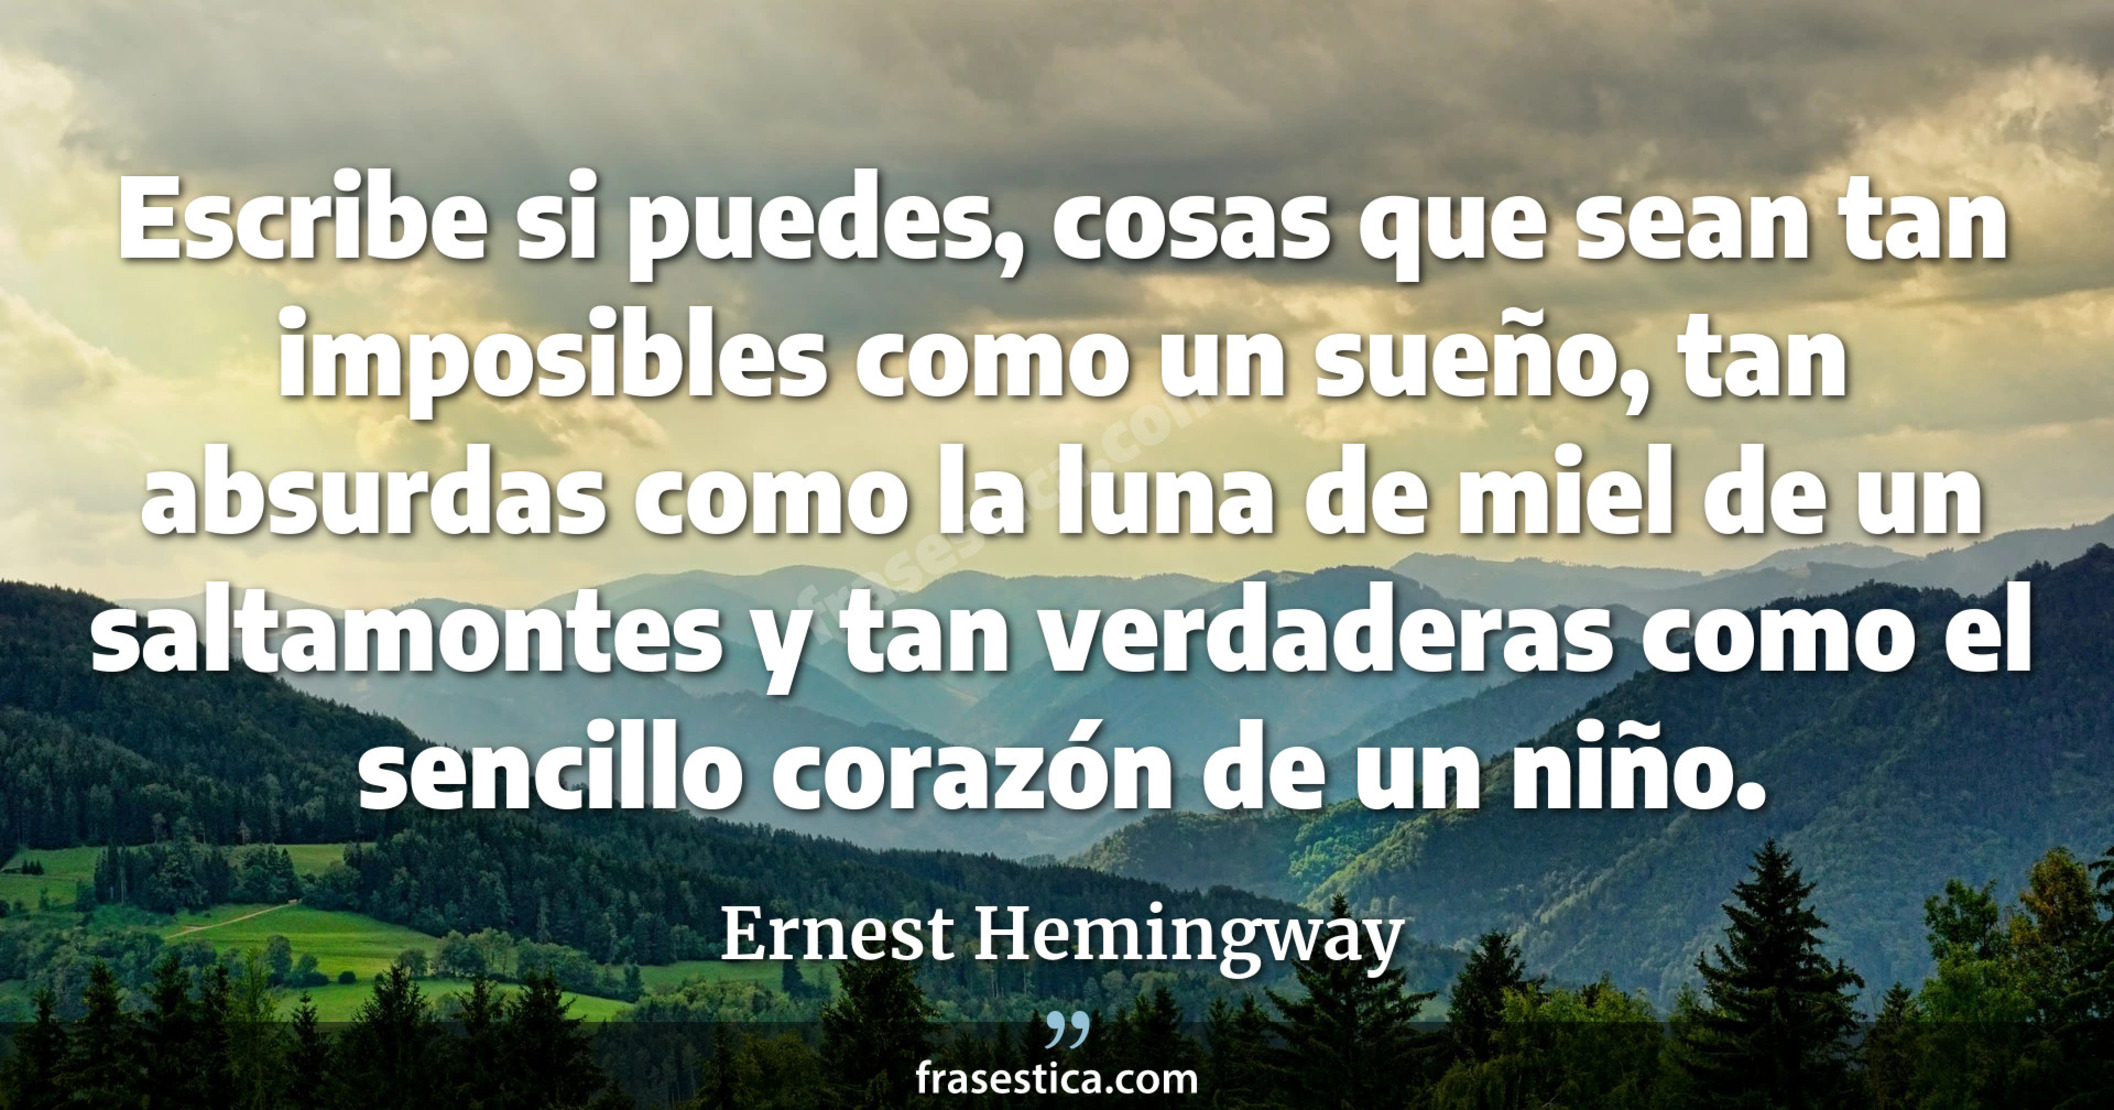 Escribe si puedes, cosas que sean tan imposibles como un sueño, tan absurdas como la luna de miel de un saltamontes y tan verdaderas como el sencillo corazón de un niño. - Ernest Hemingway